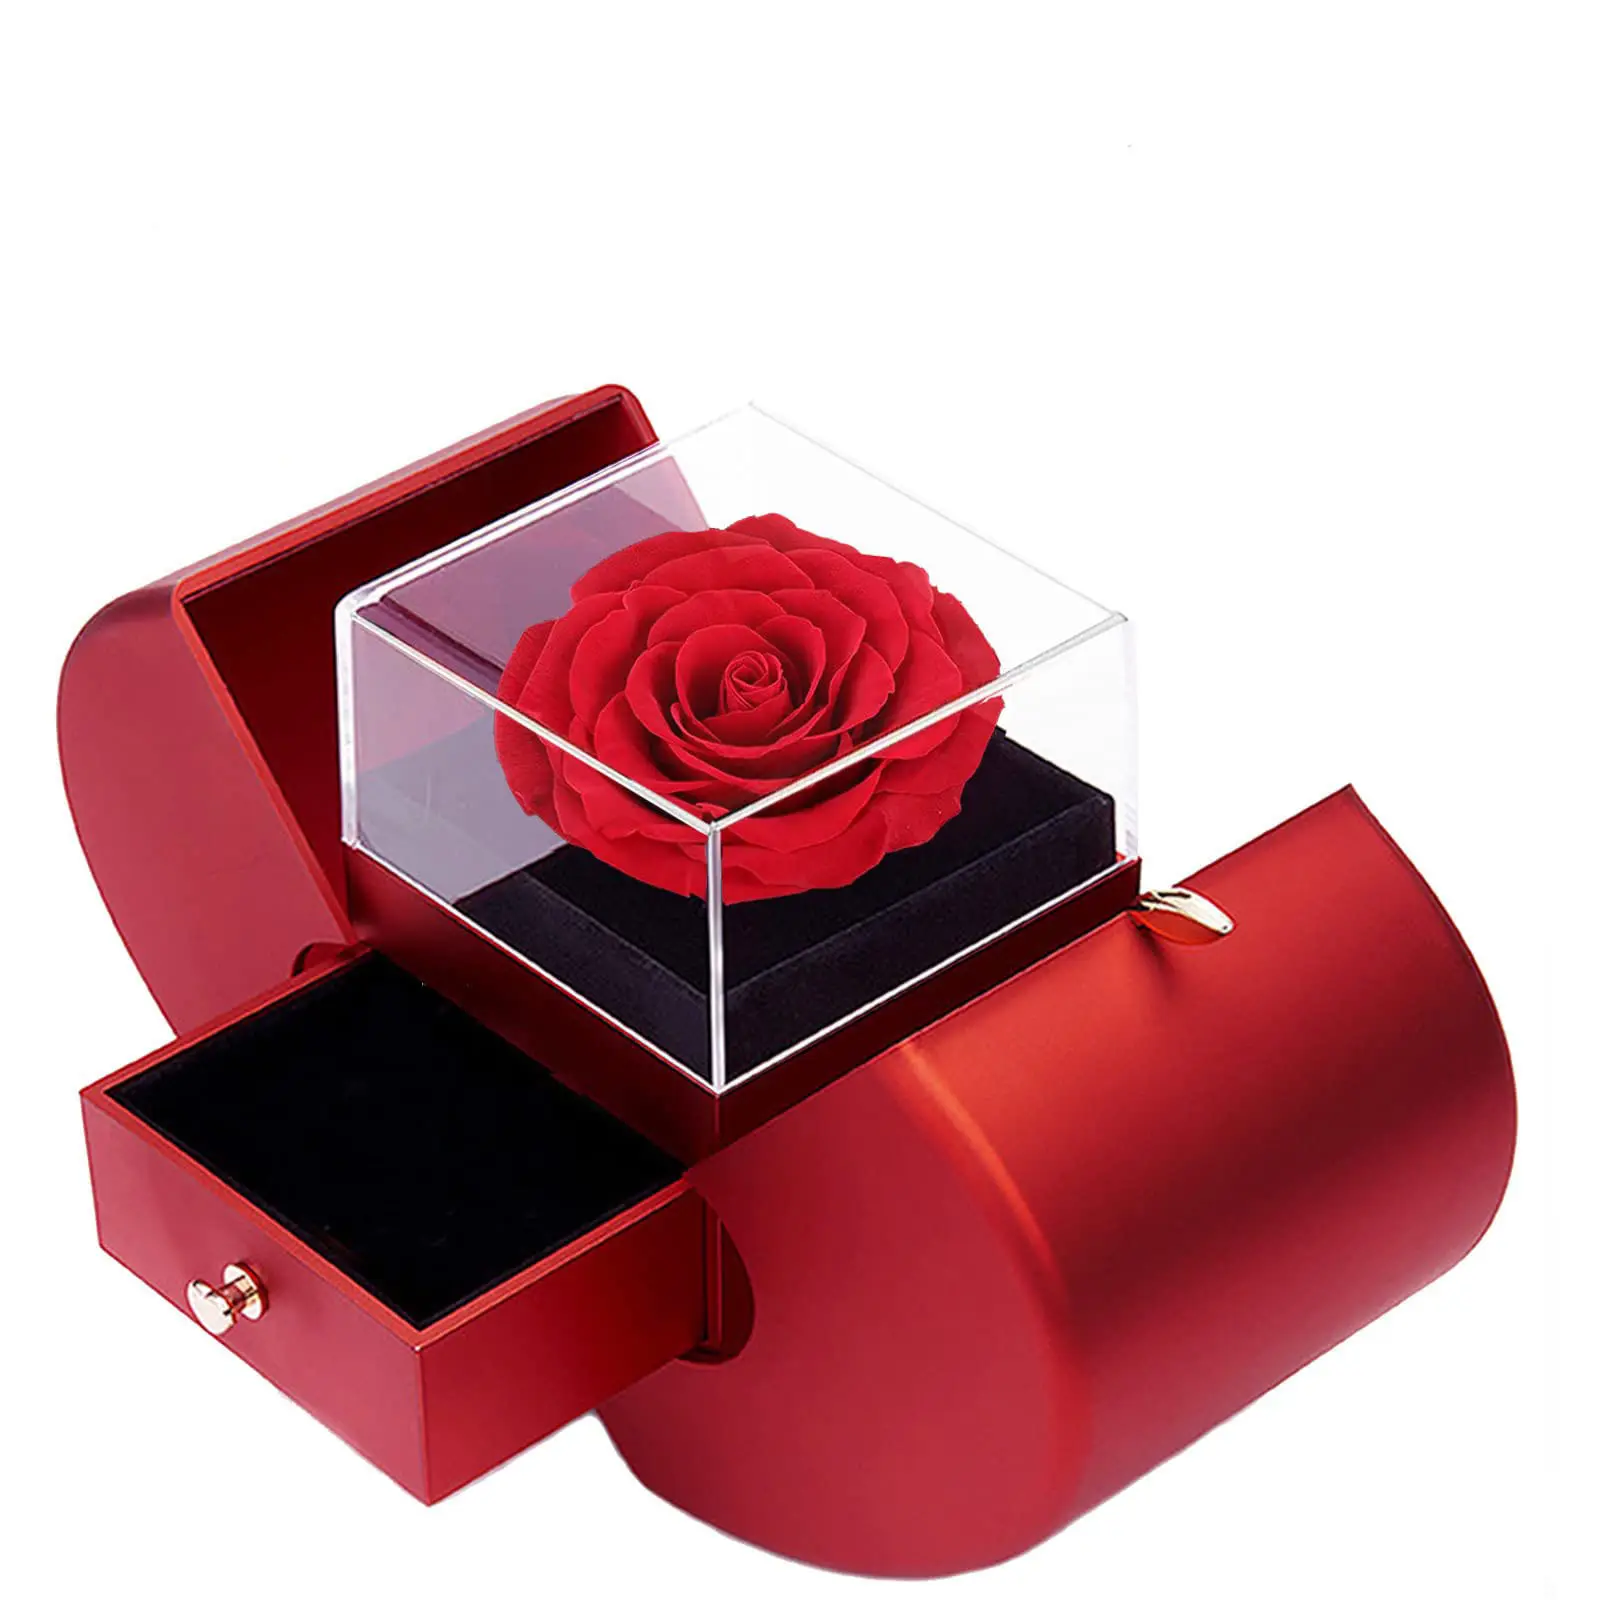 Kotak liontin cincin pintu ganda Hari Valentine, kotak perhiasan bunga abadi bentuk apel Natal